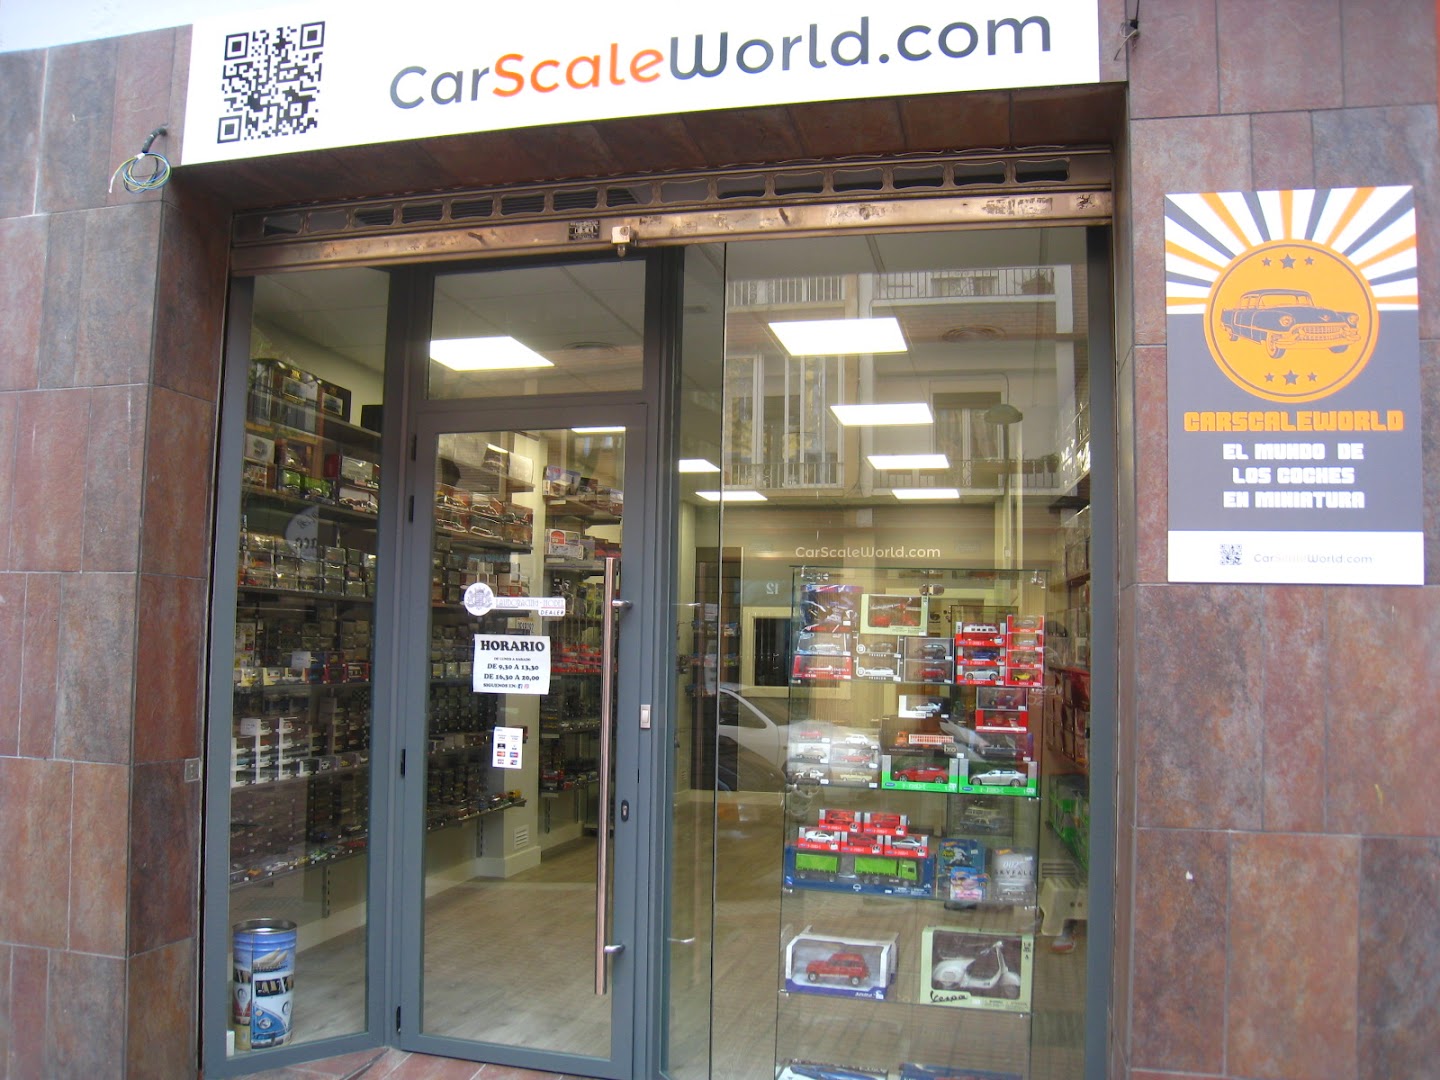 CarScaleWorld